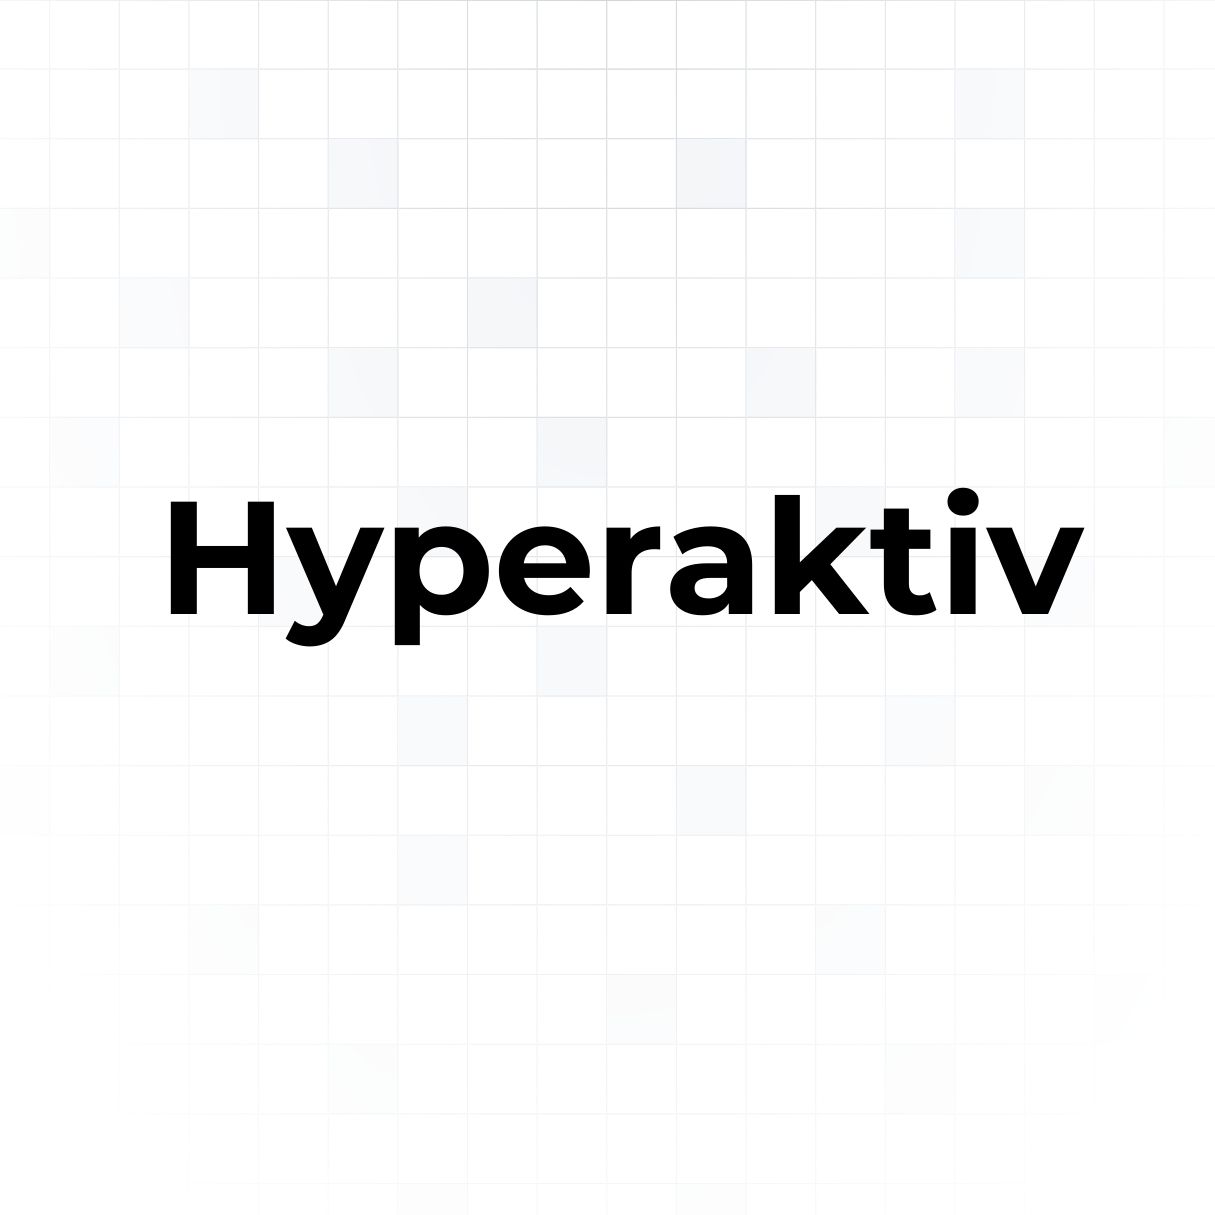 Hyperaktiv logo